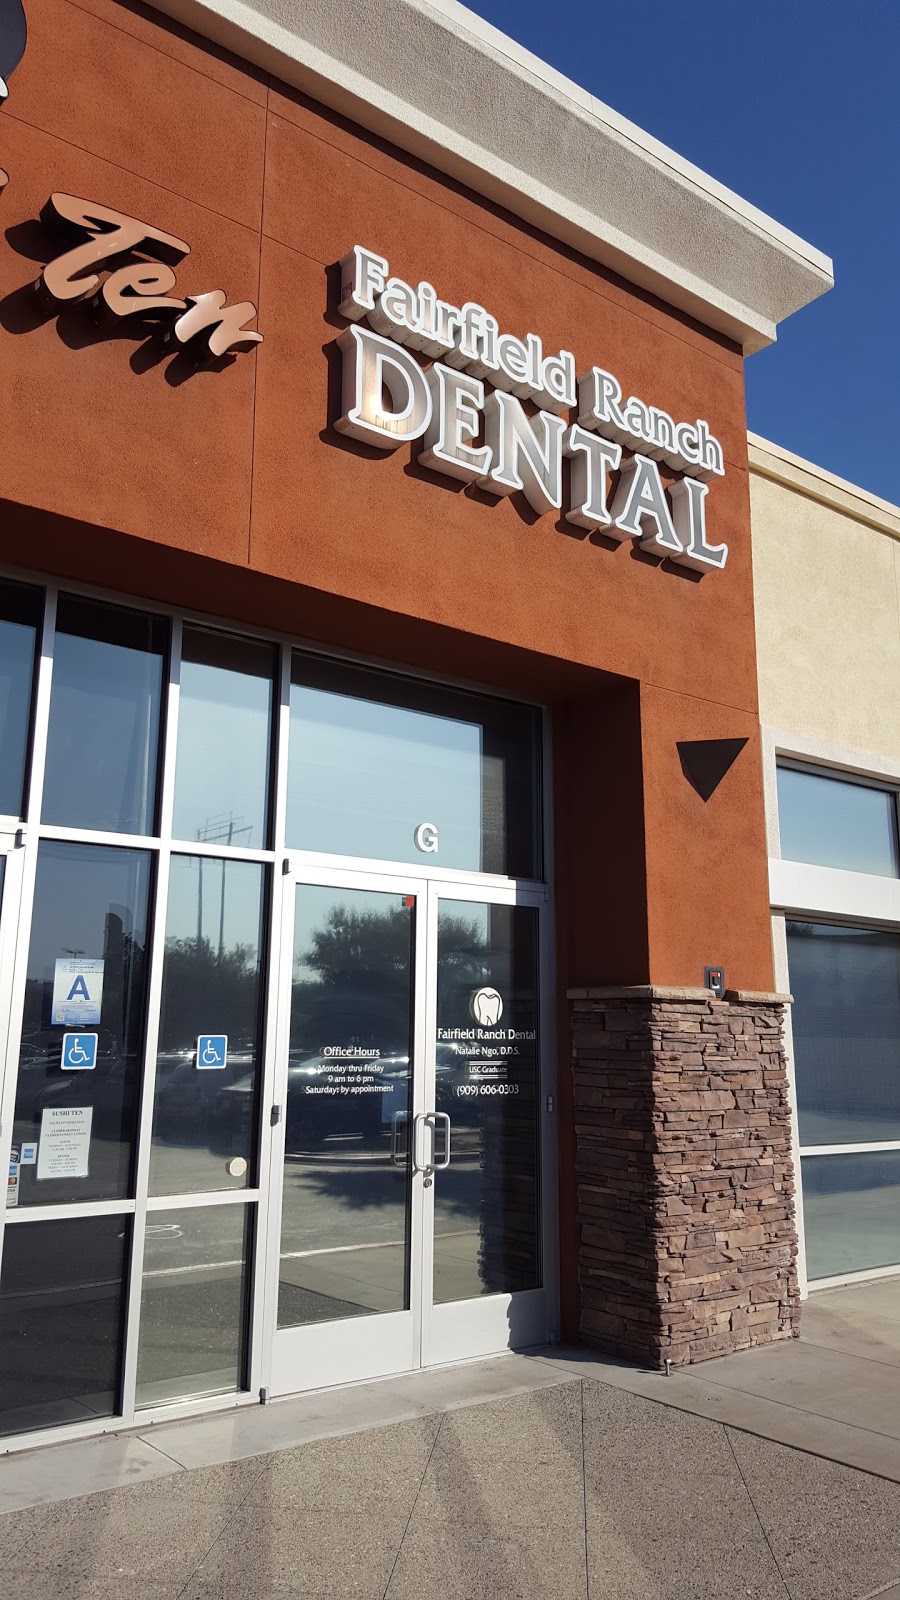 Fairfield Ranch Dental | 15463 Fairfield Ranch Rd, Chino Hills, CA 91709, USA | Phone: (909) 606-0303